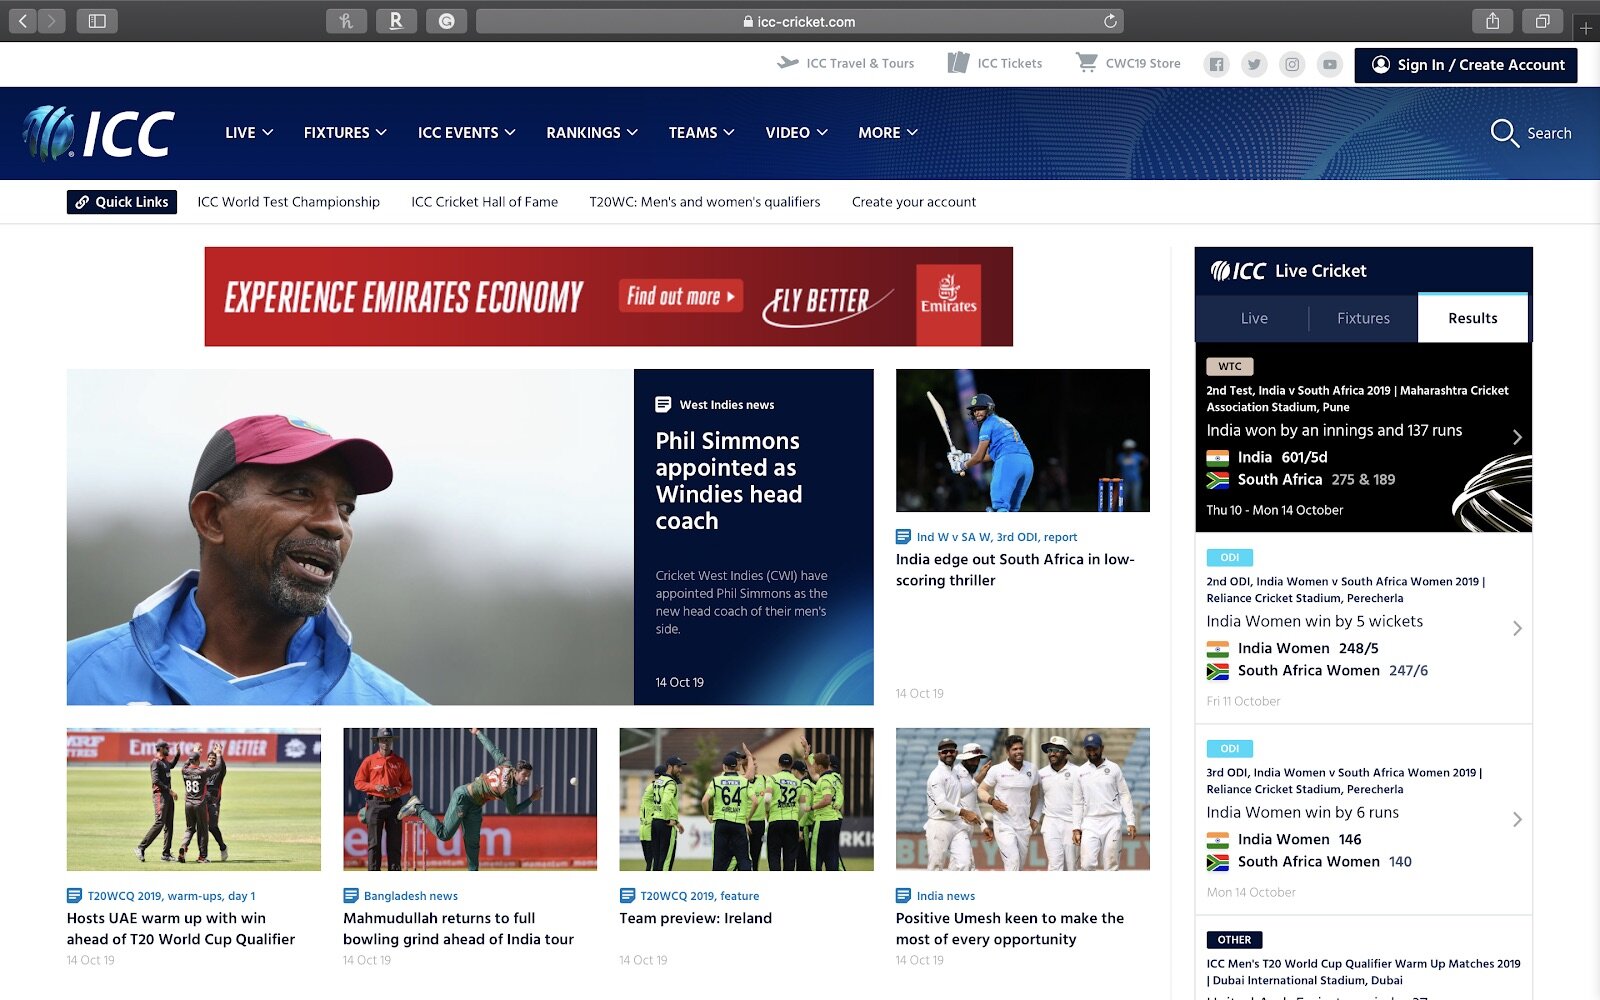 Official International Cricket Council Website